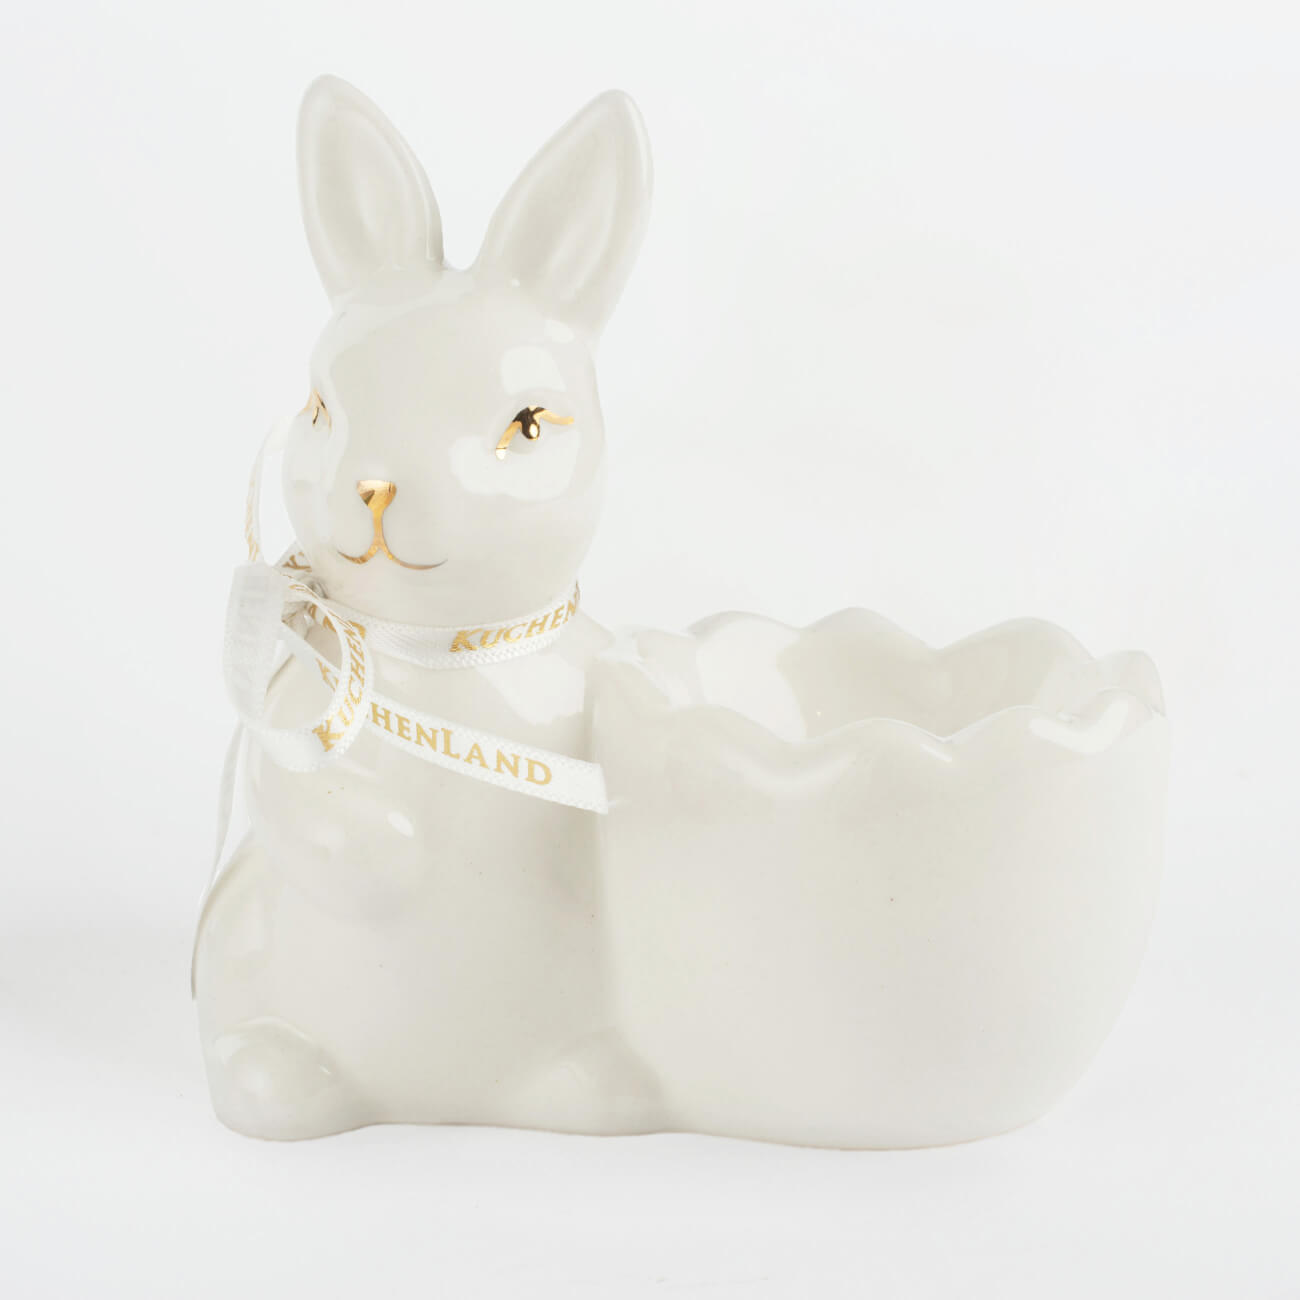 Подставка для яйца, 10 см, керамика, бело-золотистая, Кролик со скорлупкой, Easter gold яйца подвески для декорирования